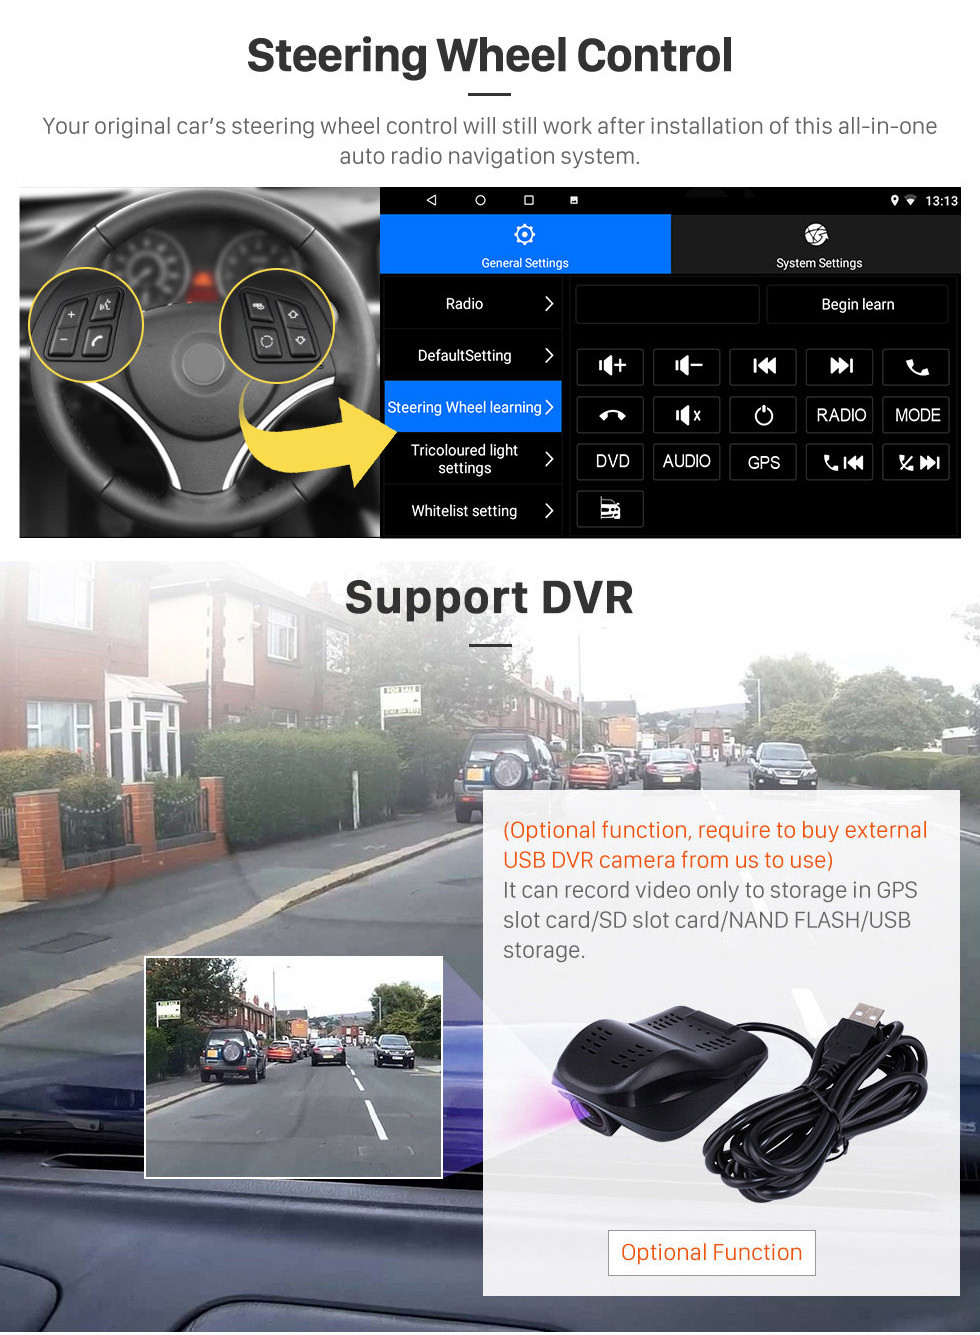 Seicane OEM 9-дюймовый Android 13.0 радио для 2001-2008 Peugeot 307 Bluetooth WIFI HD с сенсорным экраном GPS-навигация Поддержка Carplay DVR OBD камера заднего вида